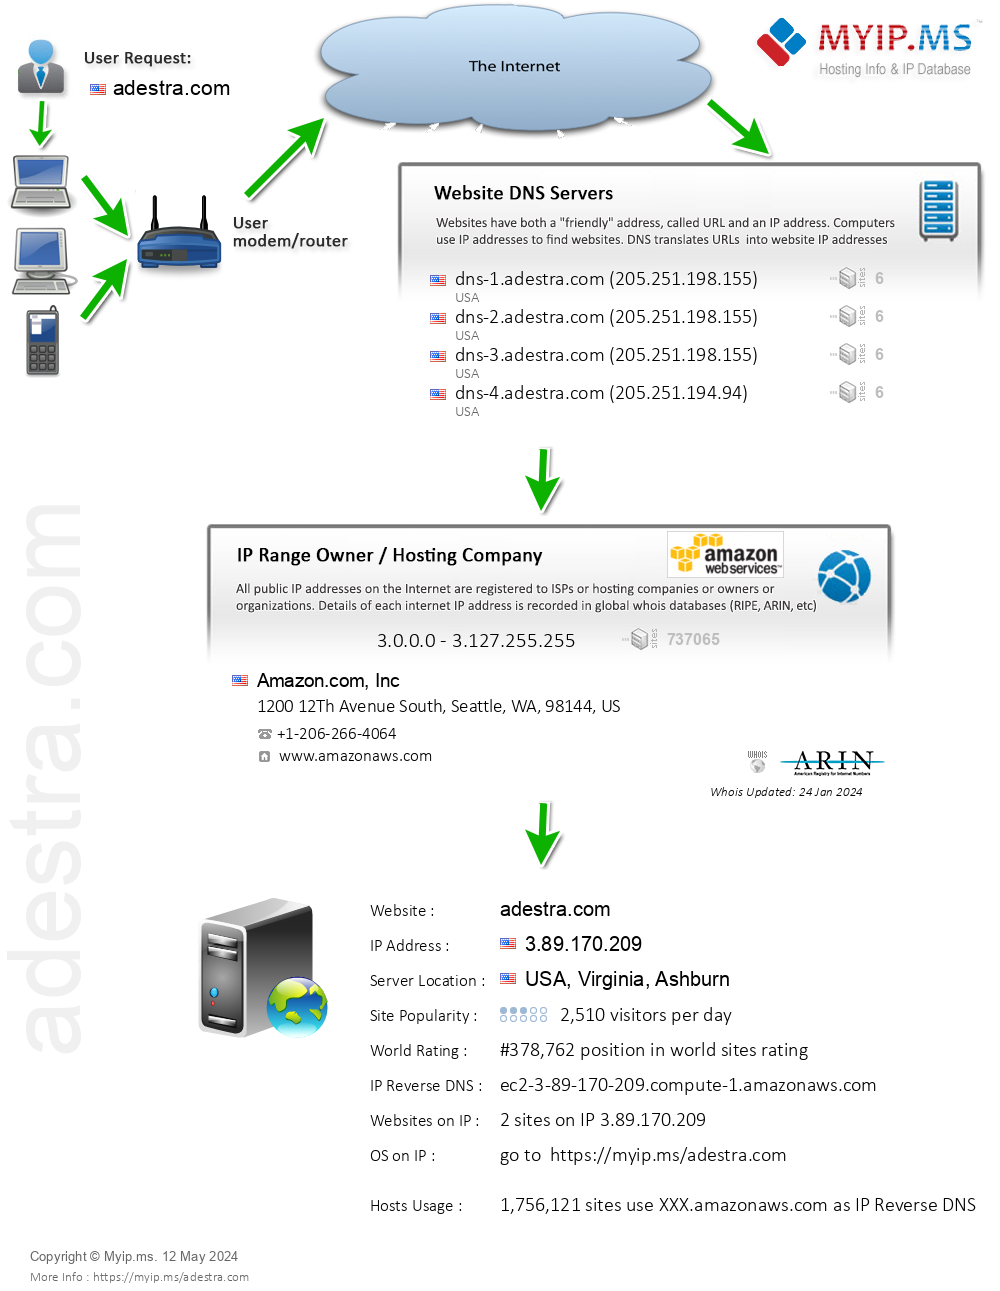 Adestra.com - Website Hosting Visual IP Diagram